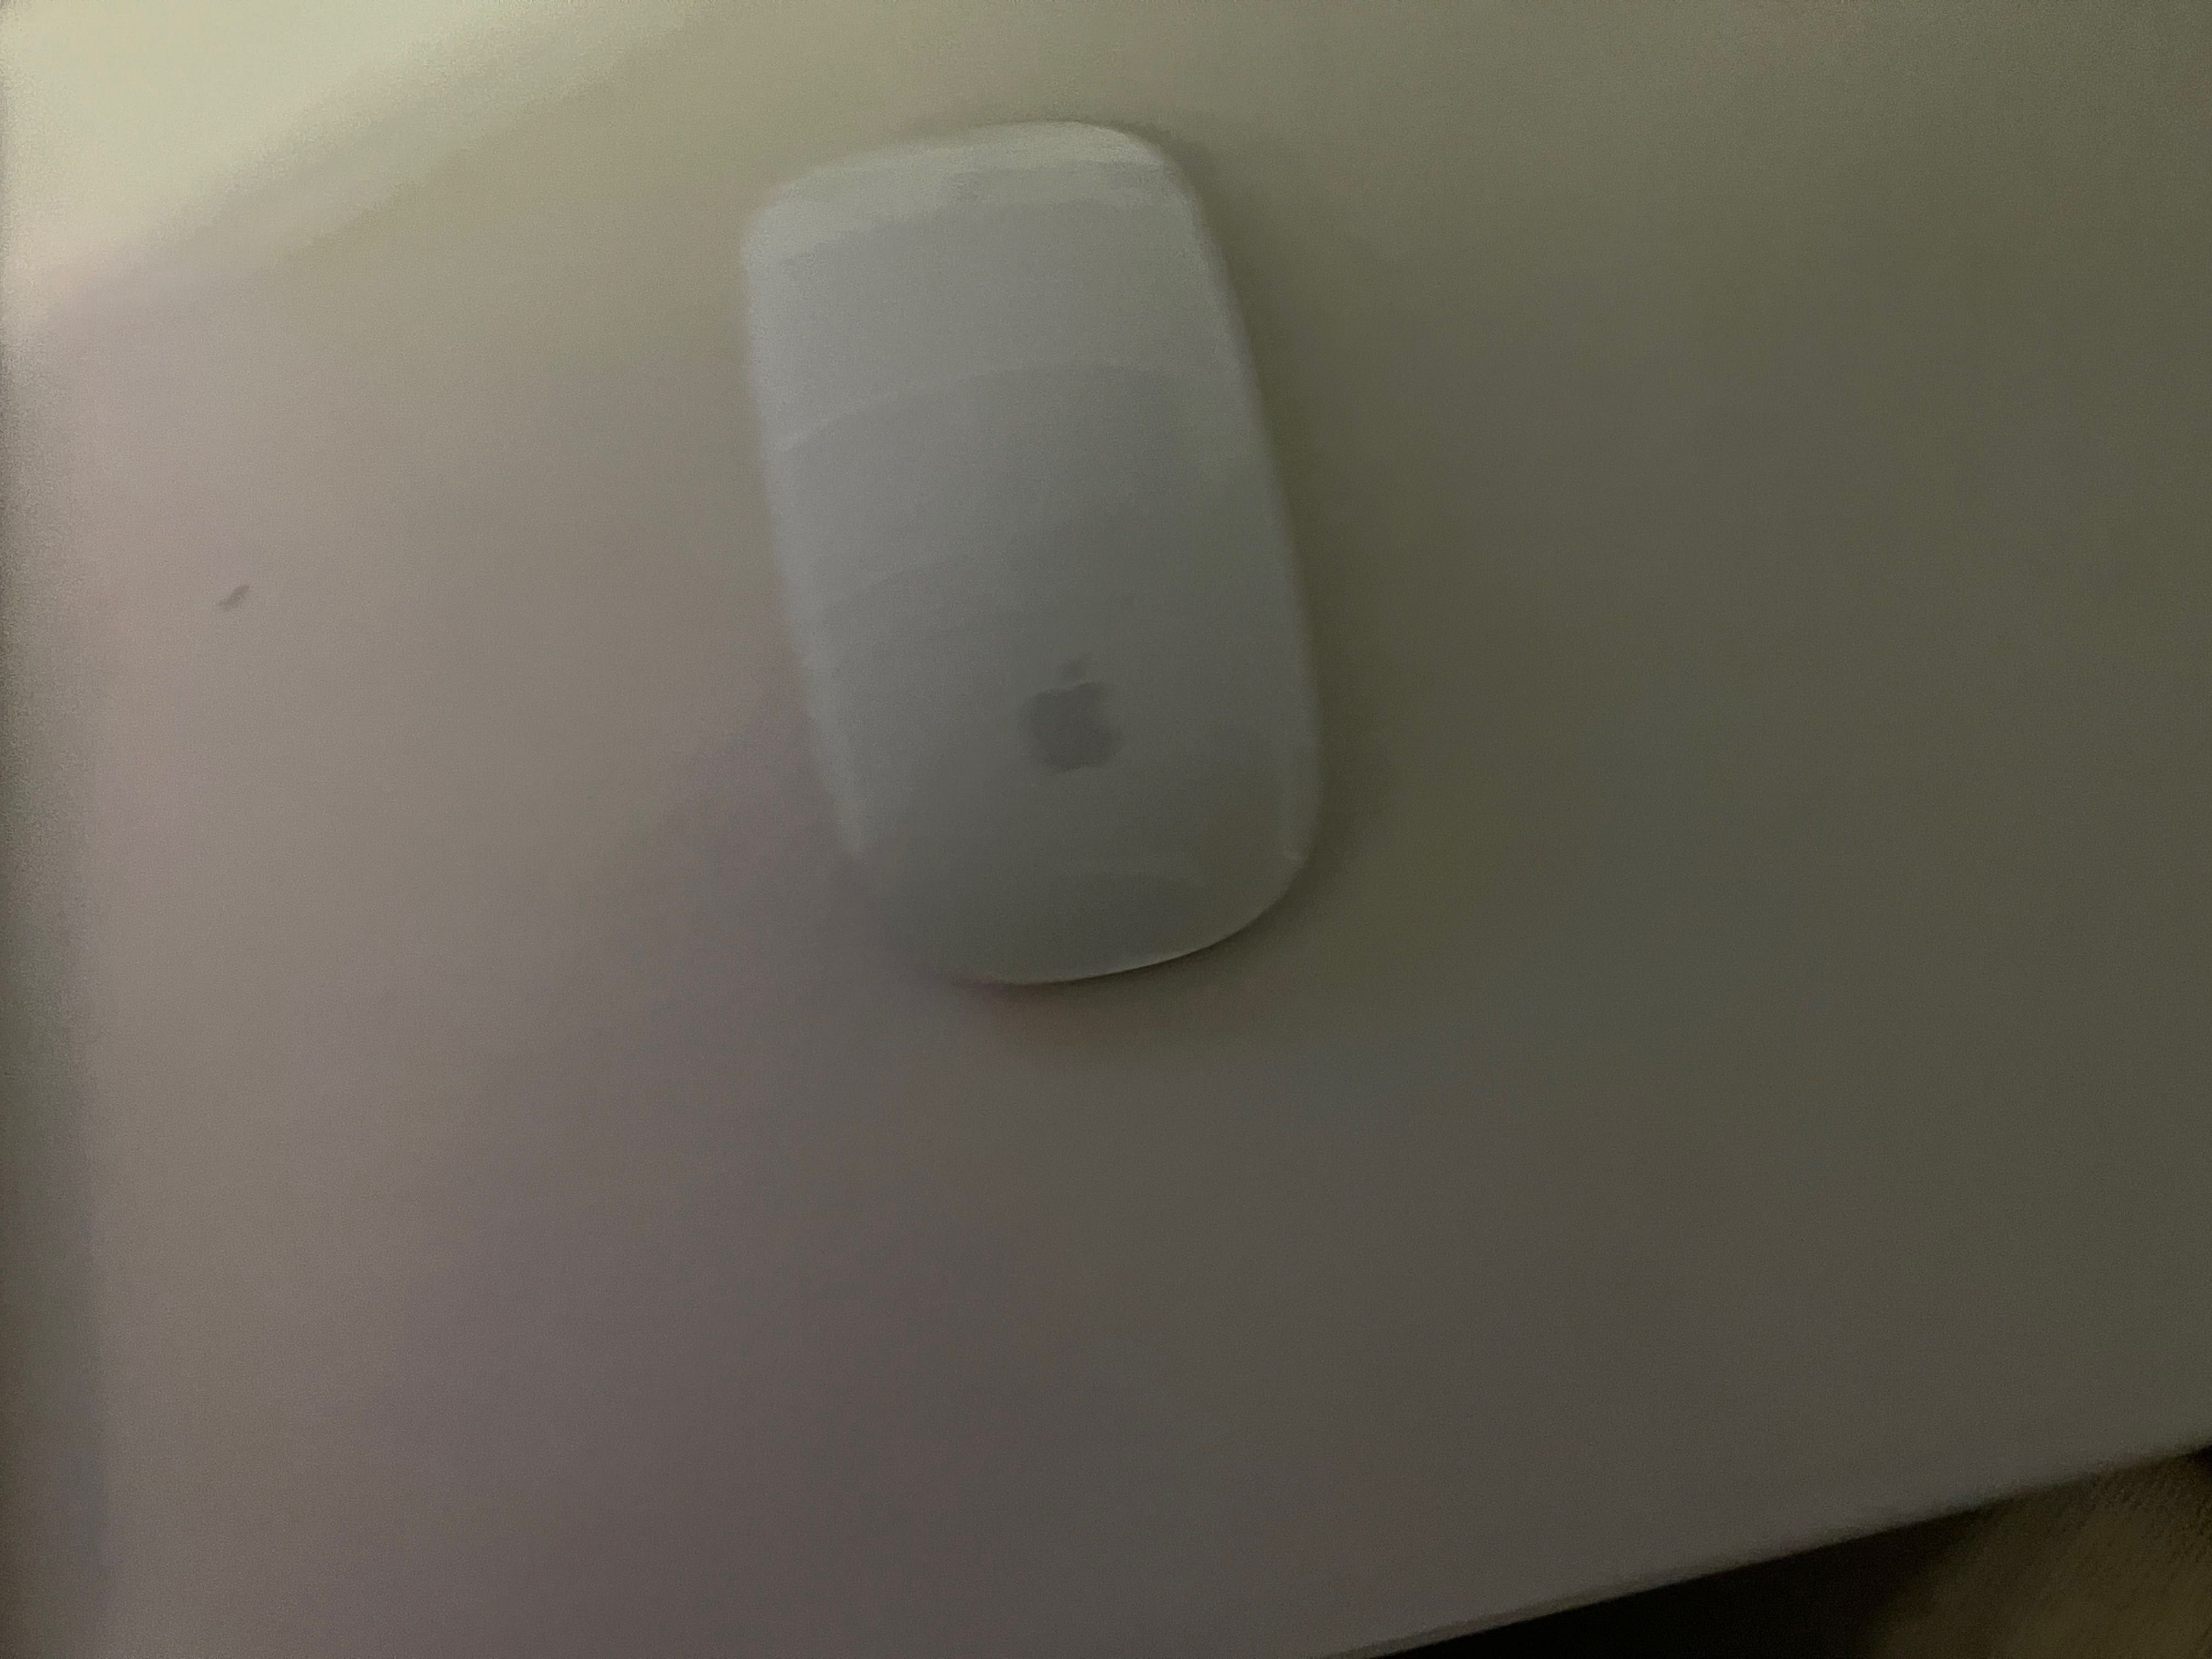 Sprzedam Macbook pro z roku 2020 i myszkę magic mouse 2